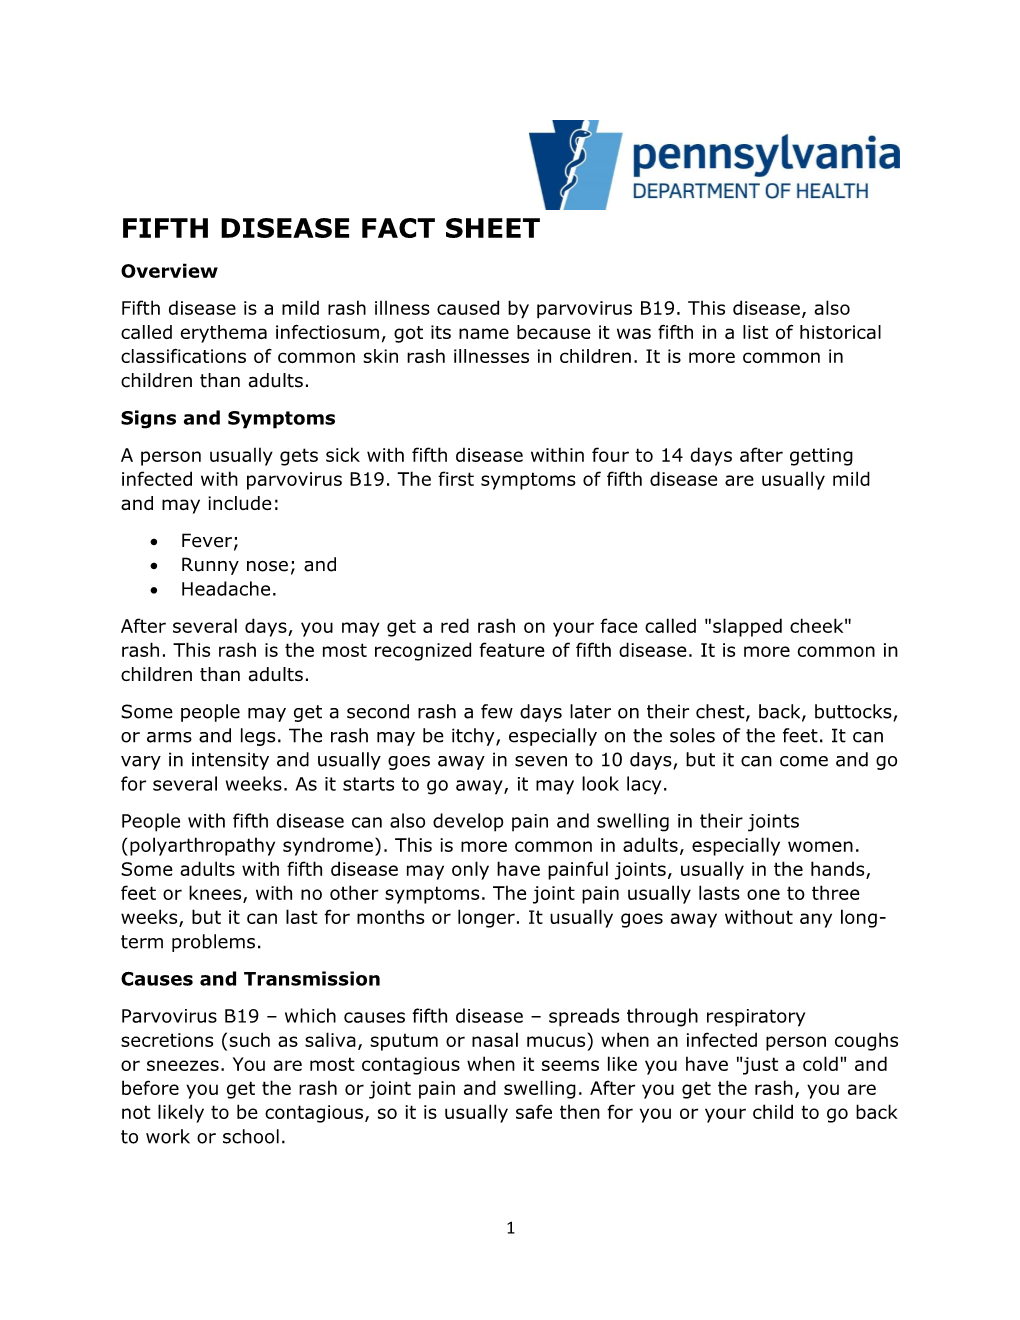 Fifth Disease Fact Sheet